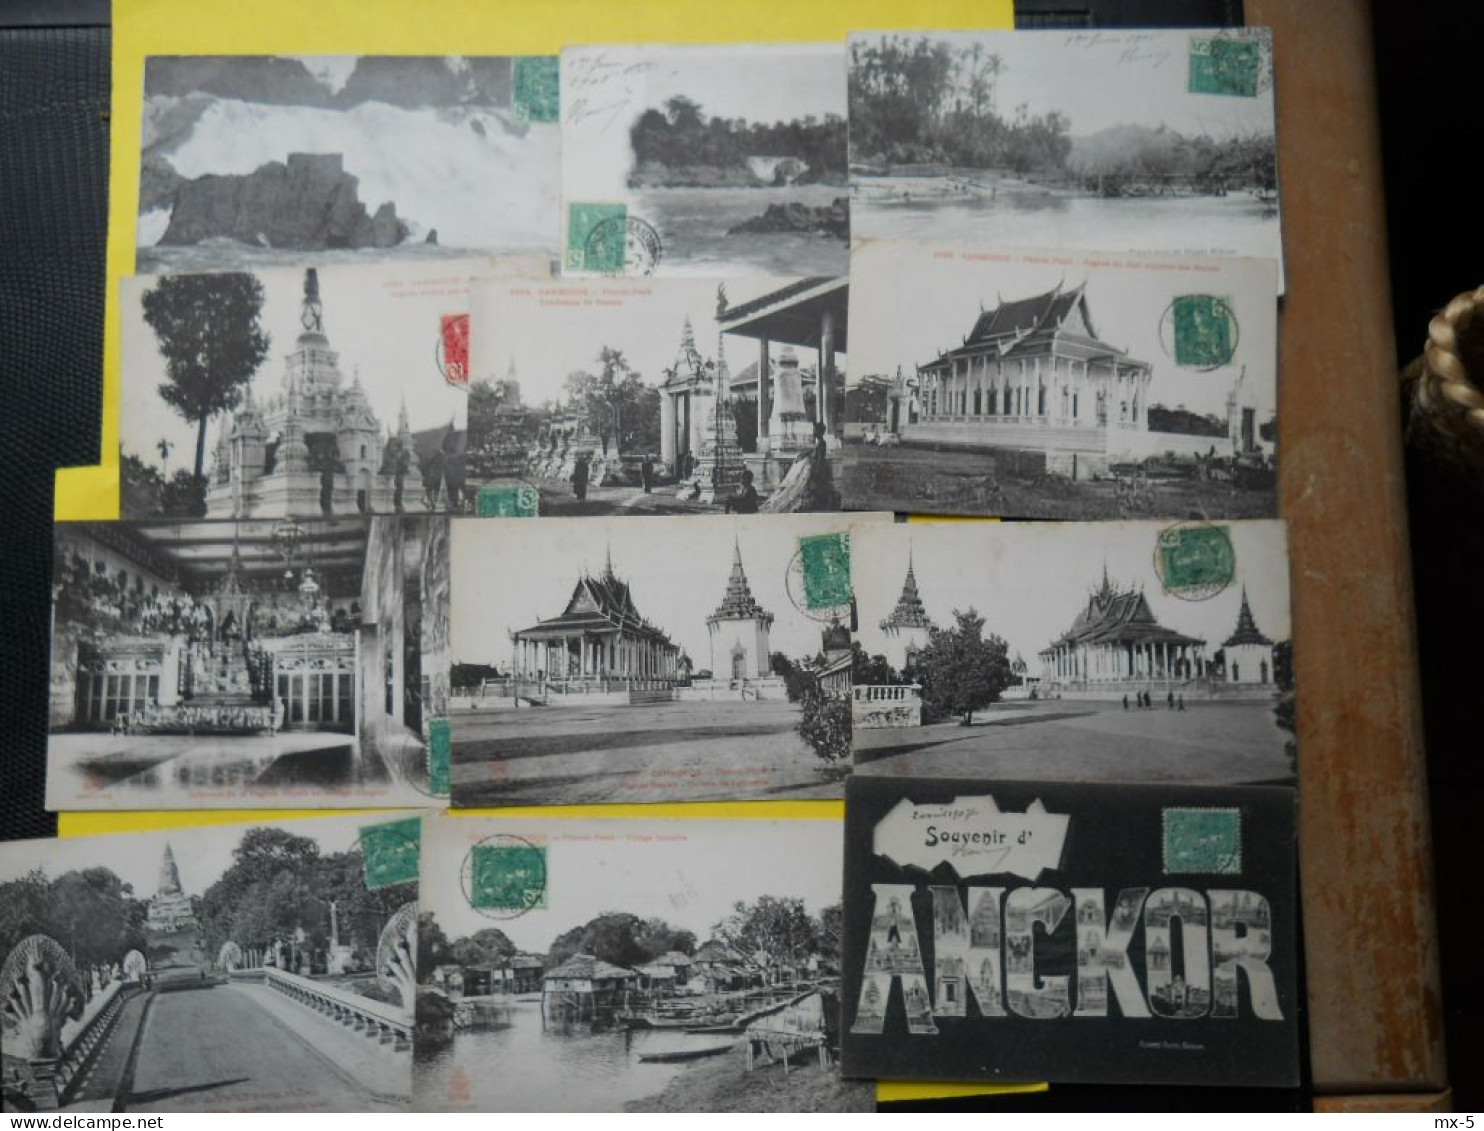 Cambodge , Phnom-penh ,lot De 19 Cpa - Cambodge